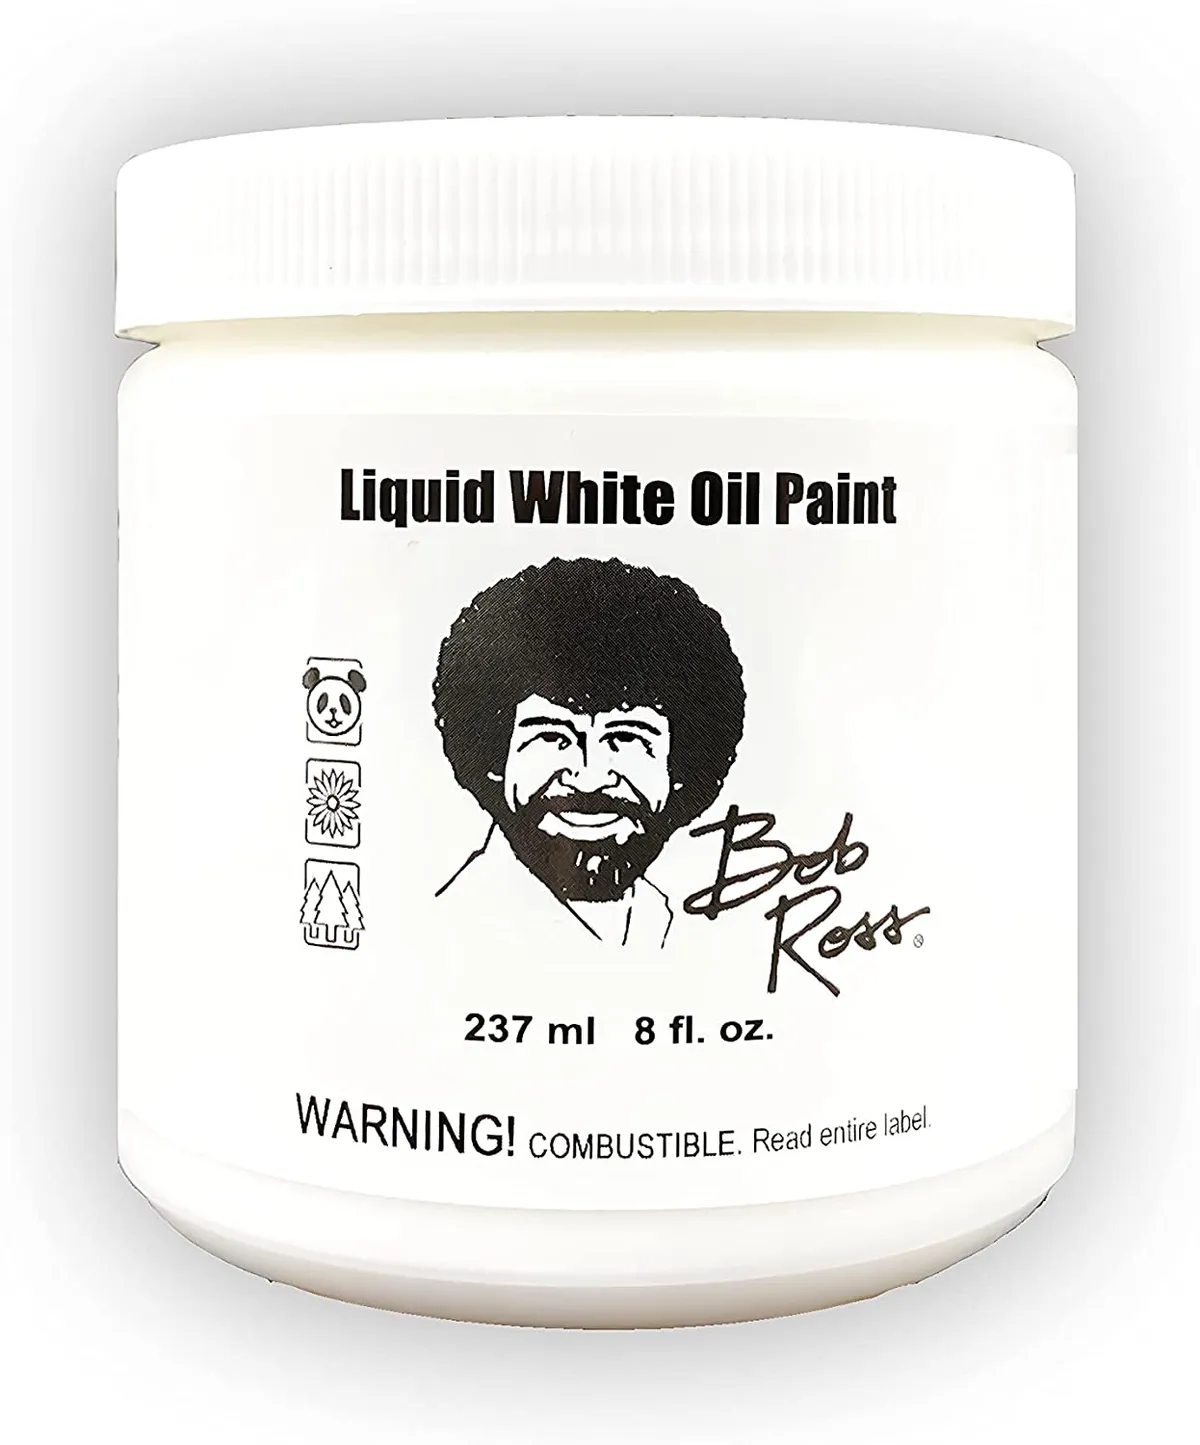 Bob ross liquid white